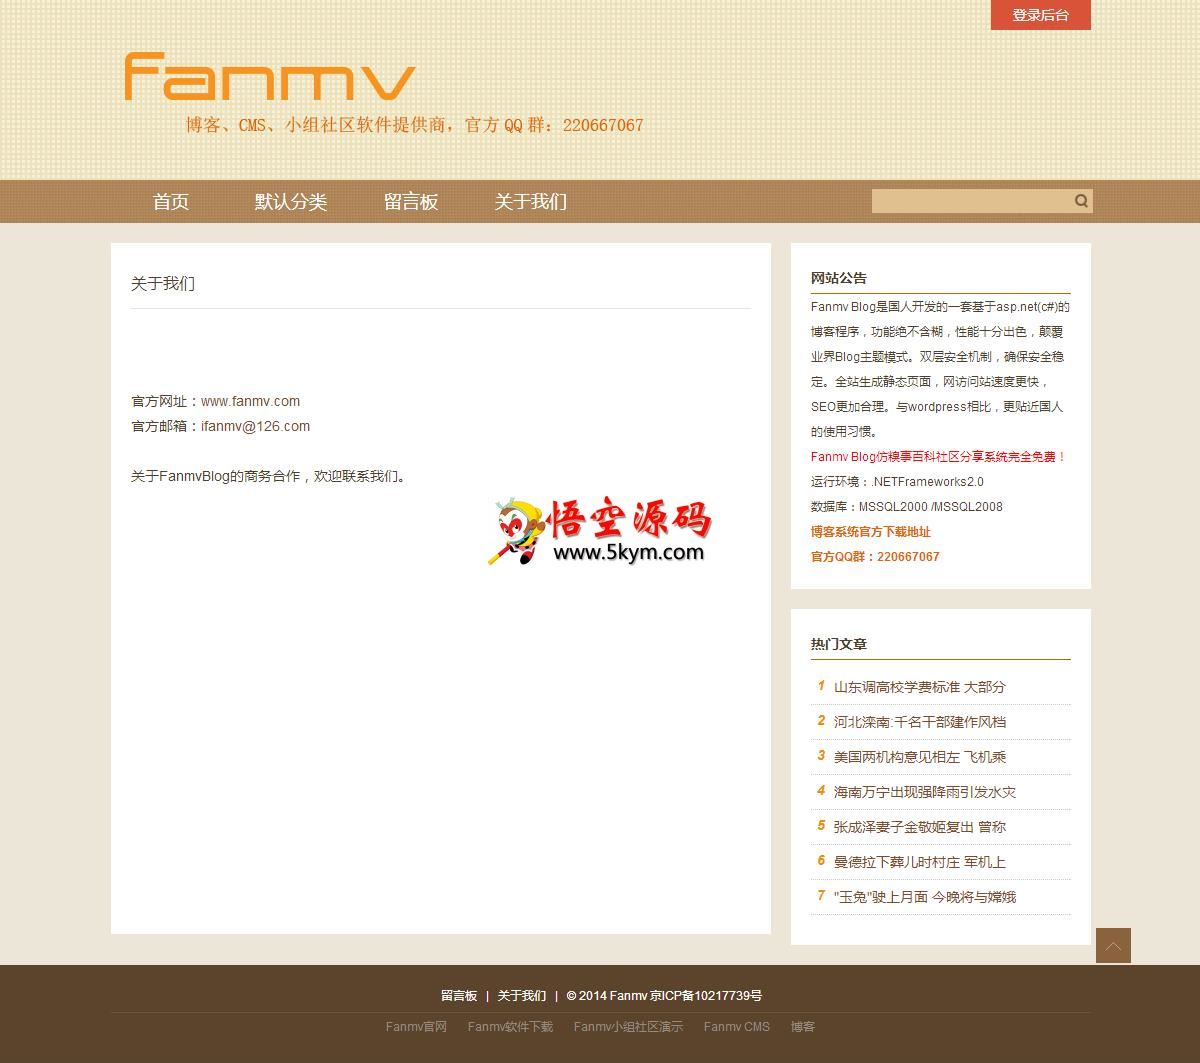 Fanmv Blog主题模板：仿糗事百科